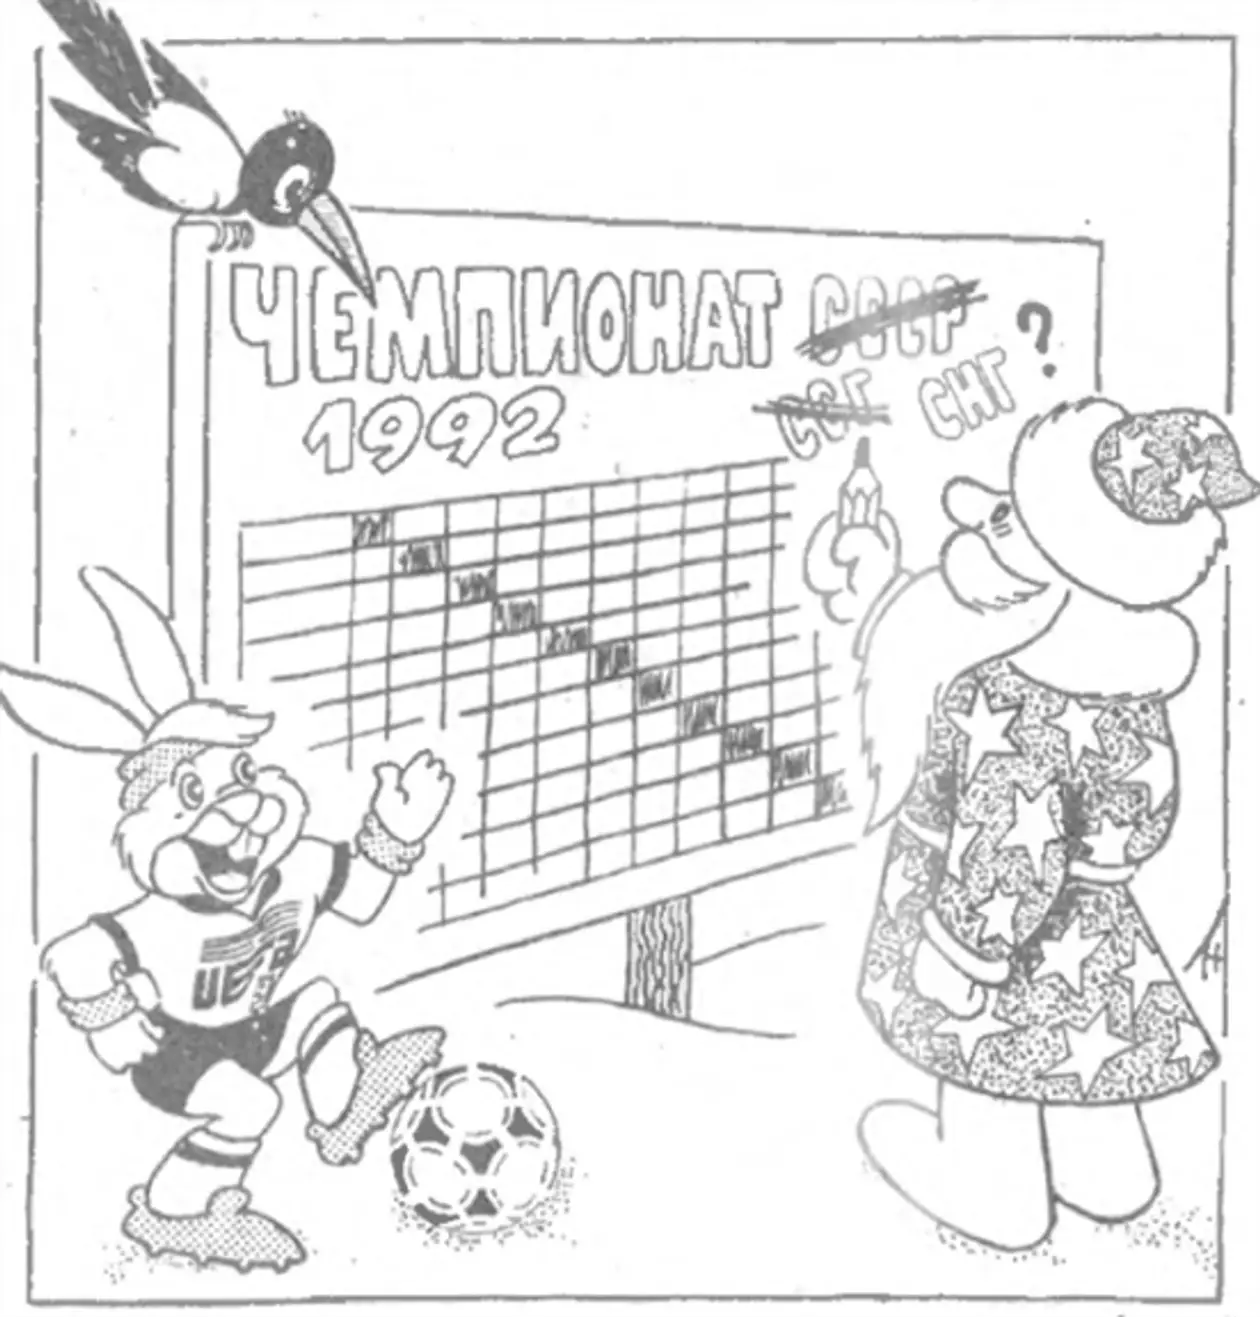 1992. Последний вздох советского футбола после развала СССР